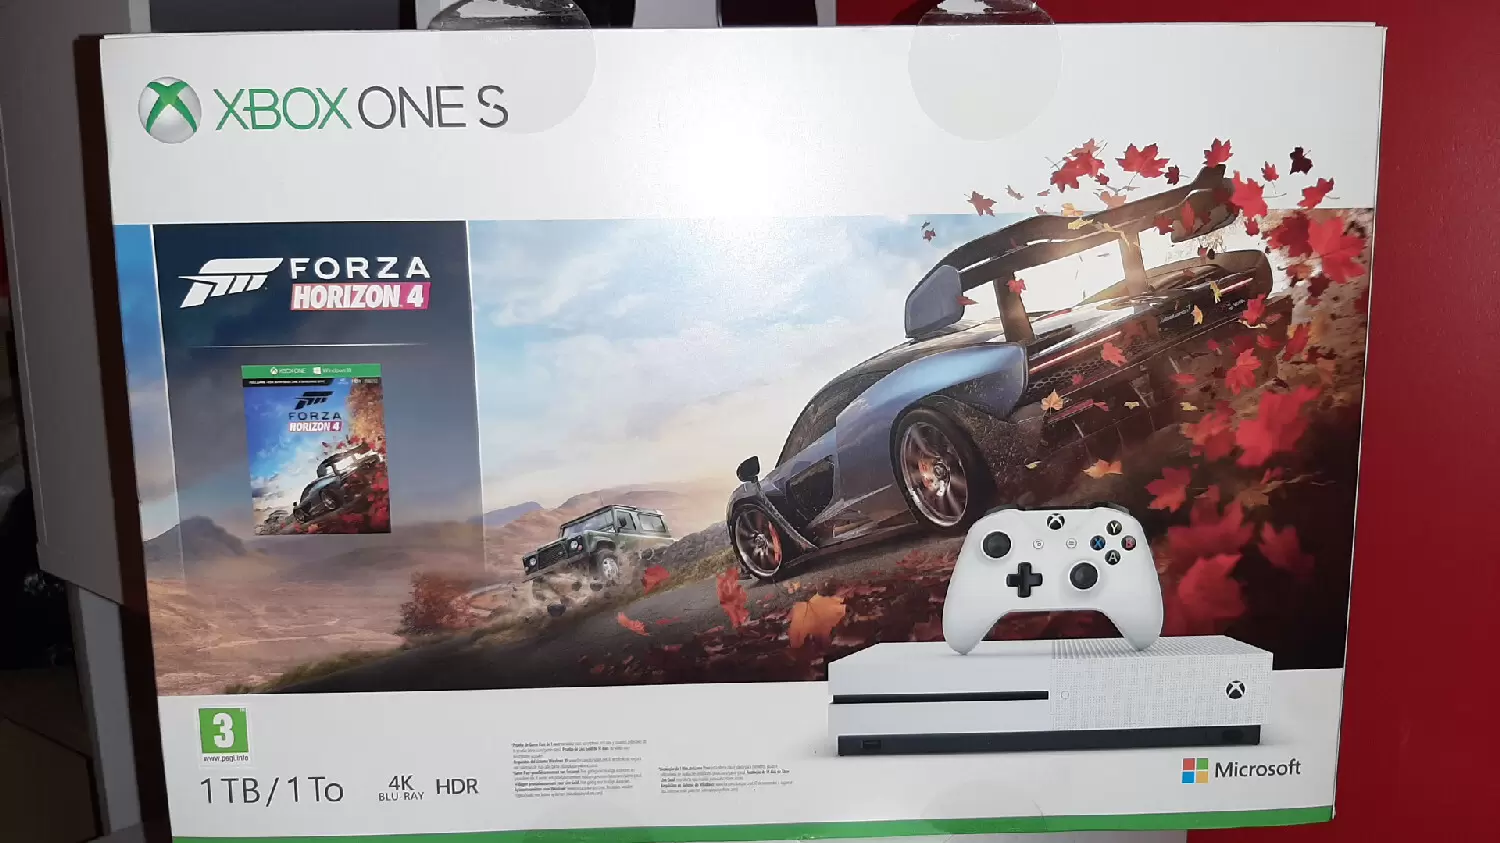 Matériel Xbox One - Xbox one S, 1TB/ 1To + Forza horizon 4